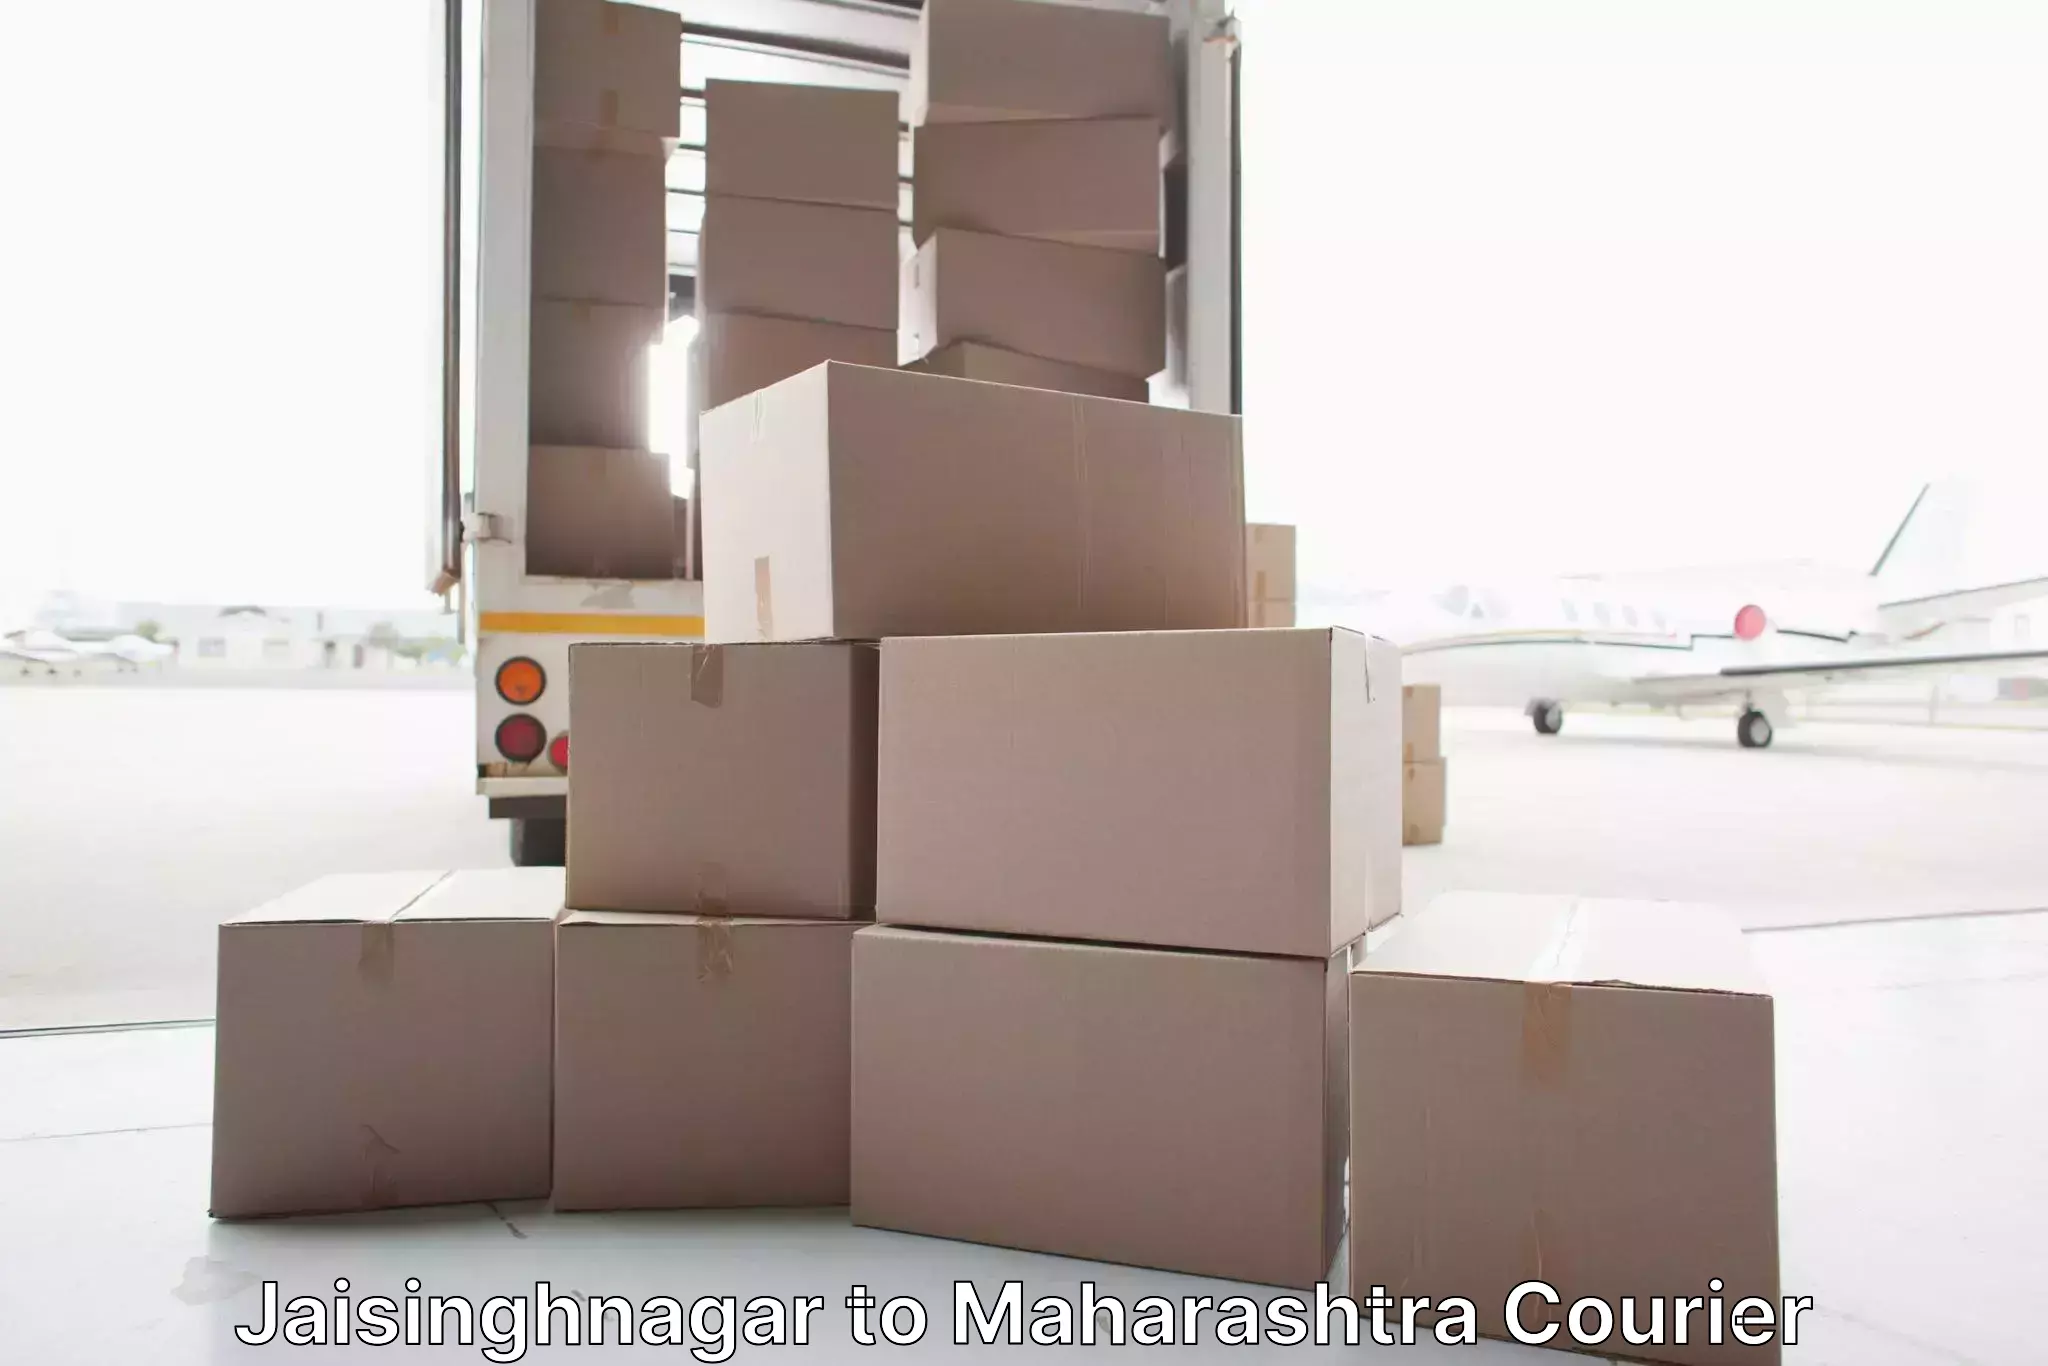 Furniture transport professionals Jaisinghnagar to Aheri